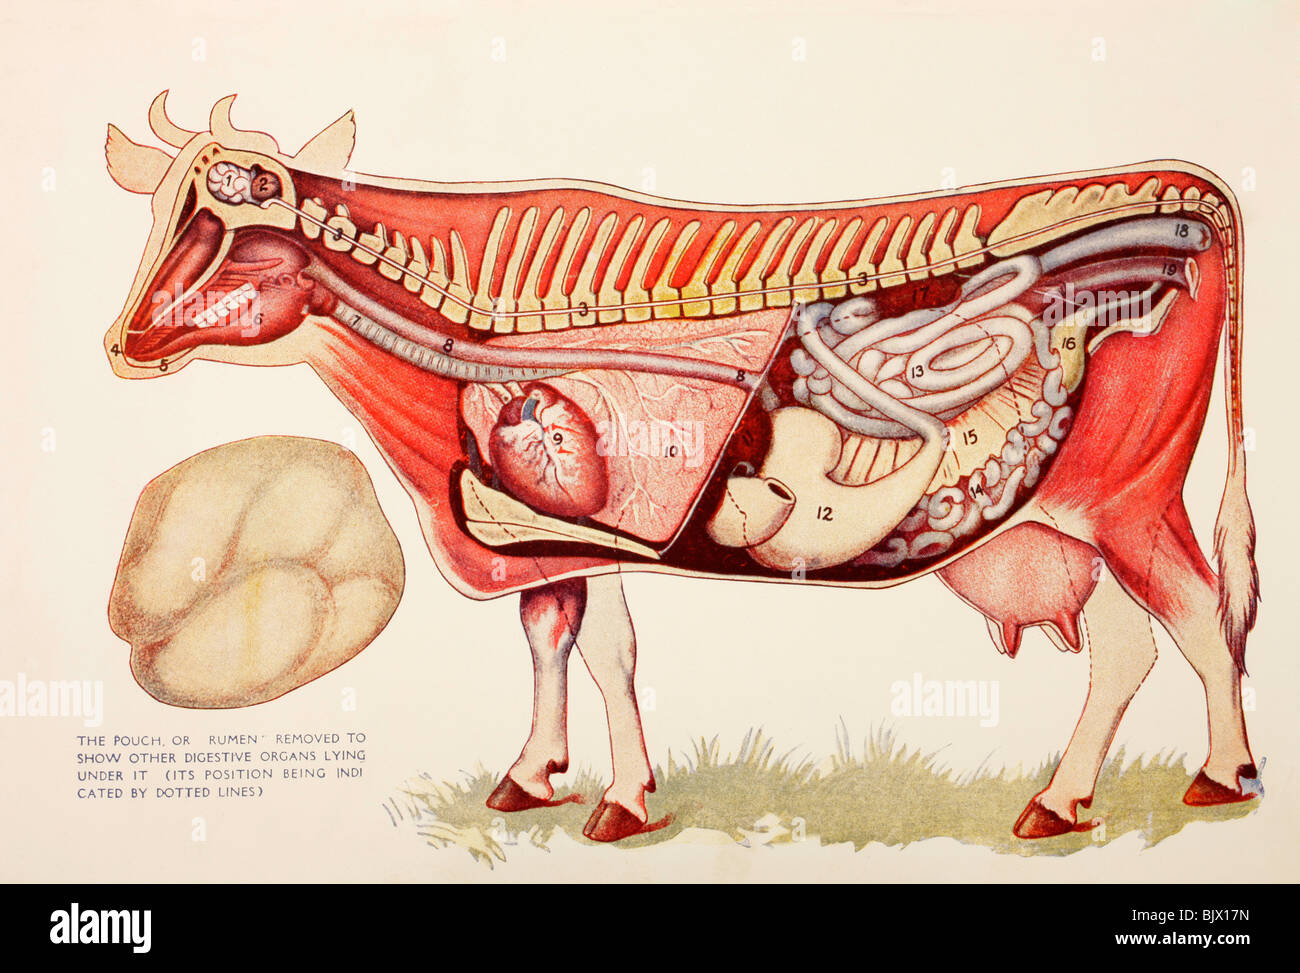 Gli organi interni di una mucca con il rumine illustrata da un lato per rivelare altri organi digestivi al di sotto di esso. Foto Stock